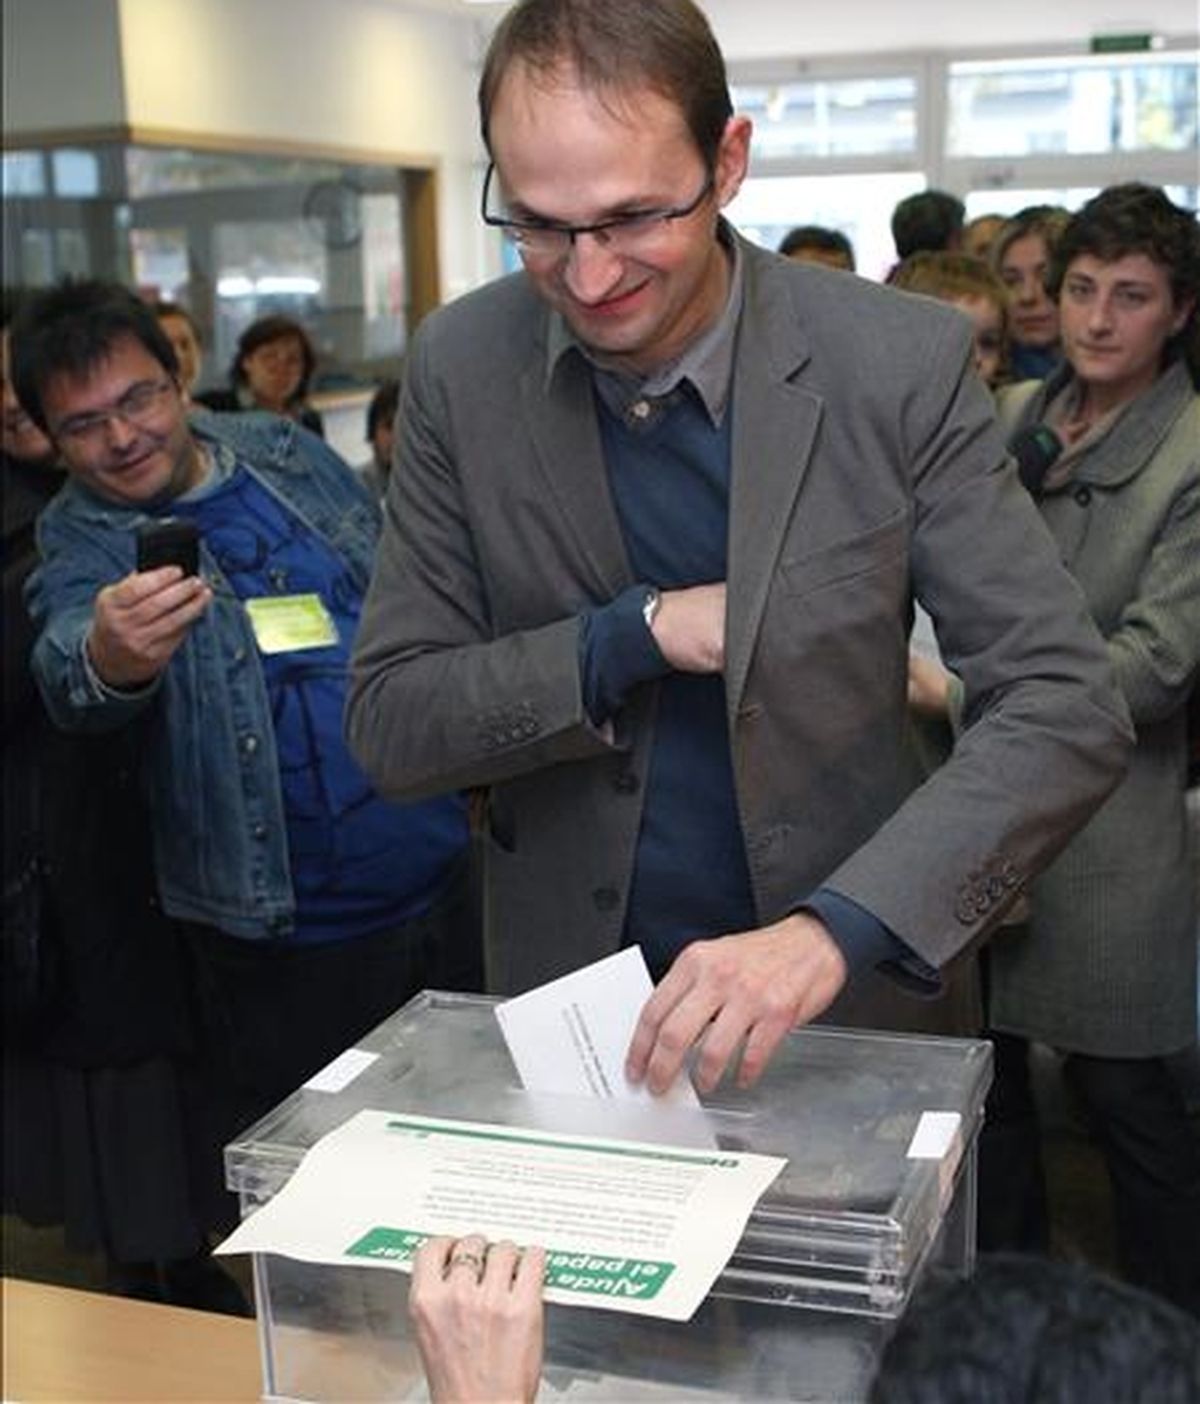 El candidato de Iniciativa por Cataluña los Verdes-Esquerra Unida Alternativa (ICV-EUIA) a la presidencia de la Generalitat, Joán Herrera, emite su voto esta mañana en la Escola Llacuna del barrio barcelonés del Poble Nou. EFE